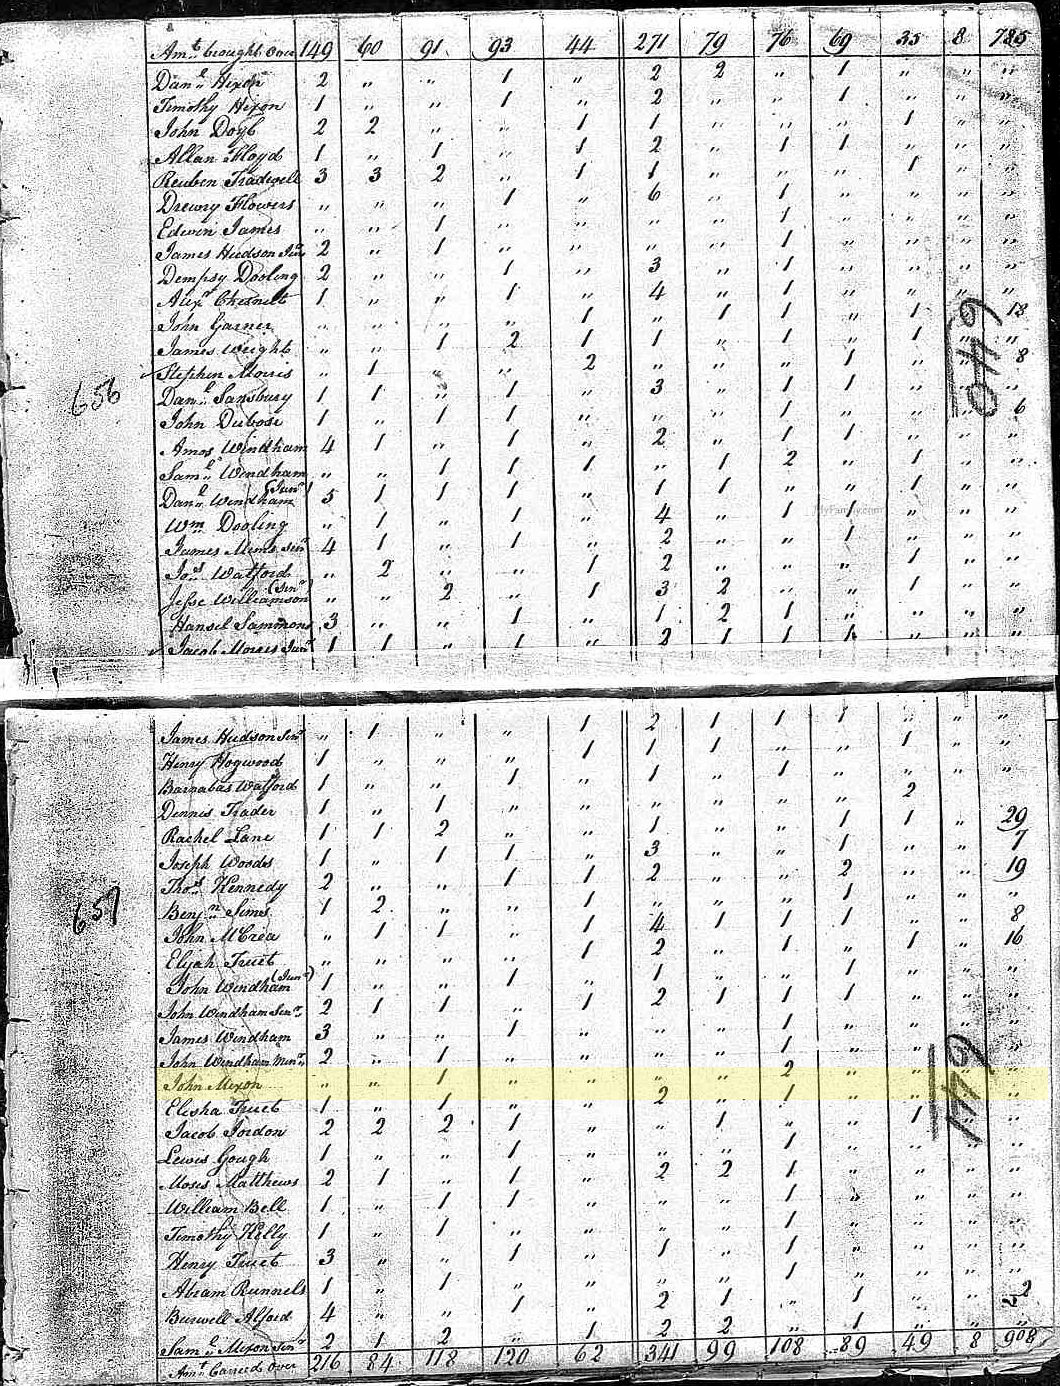 Census 1800